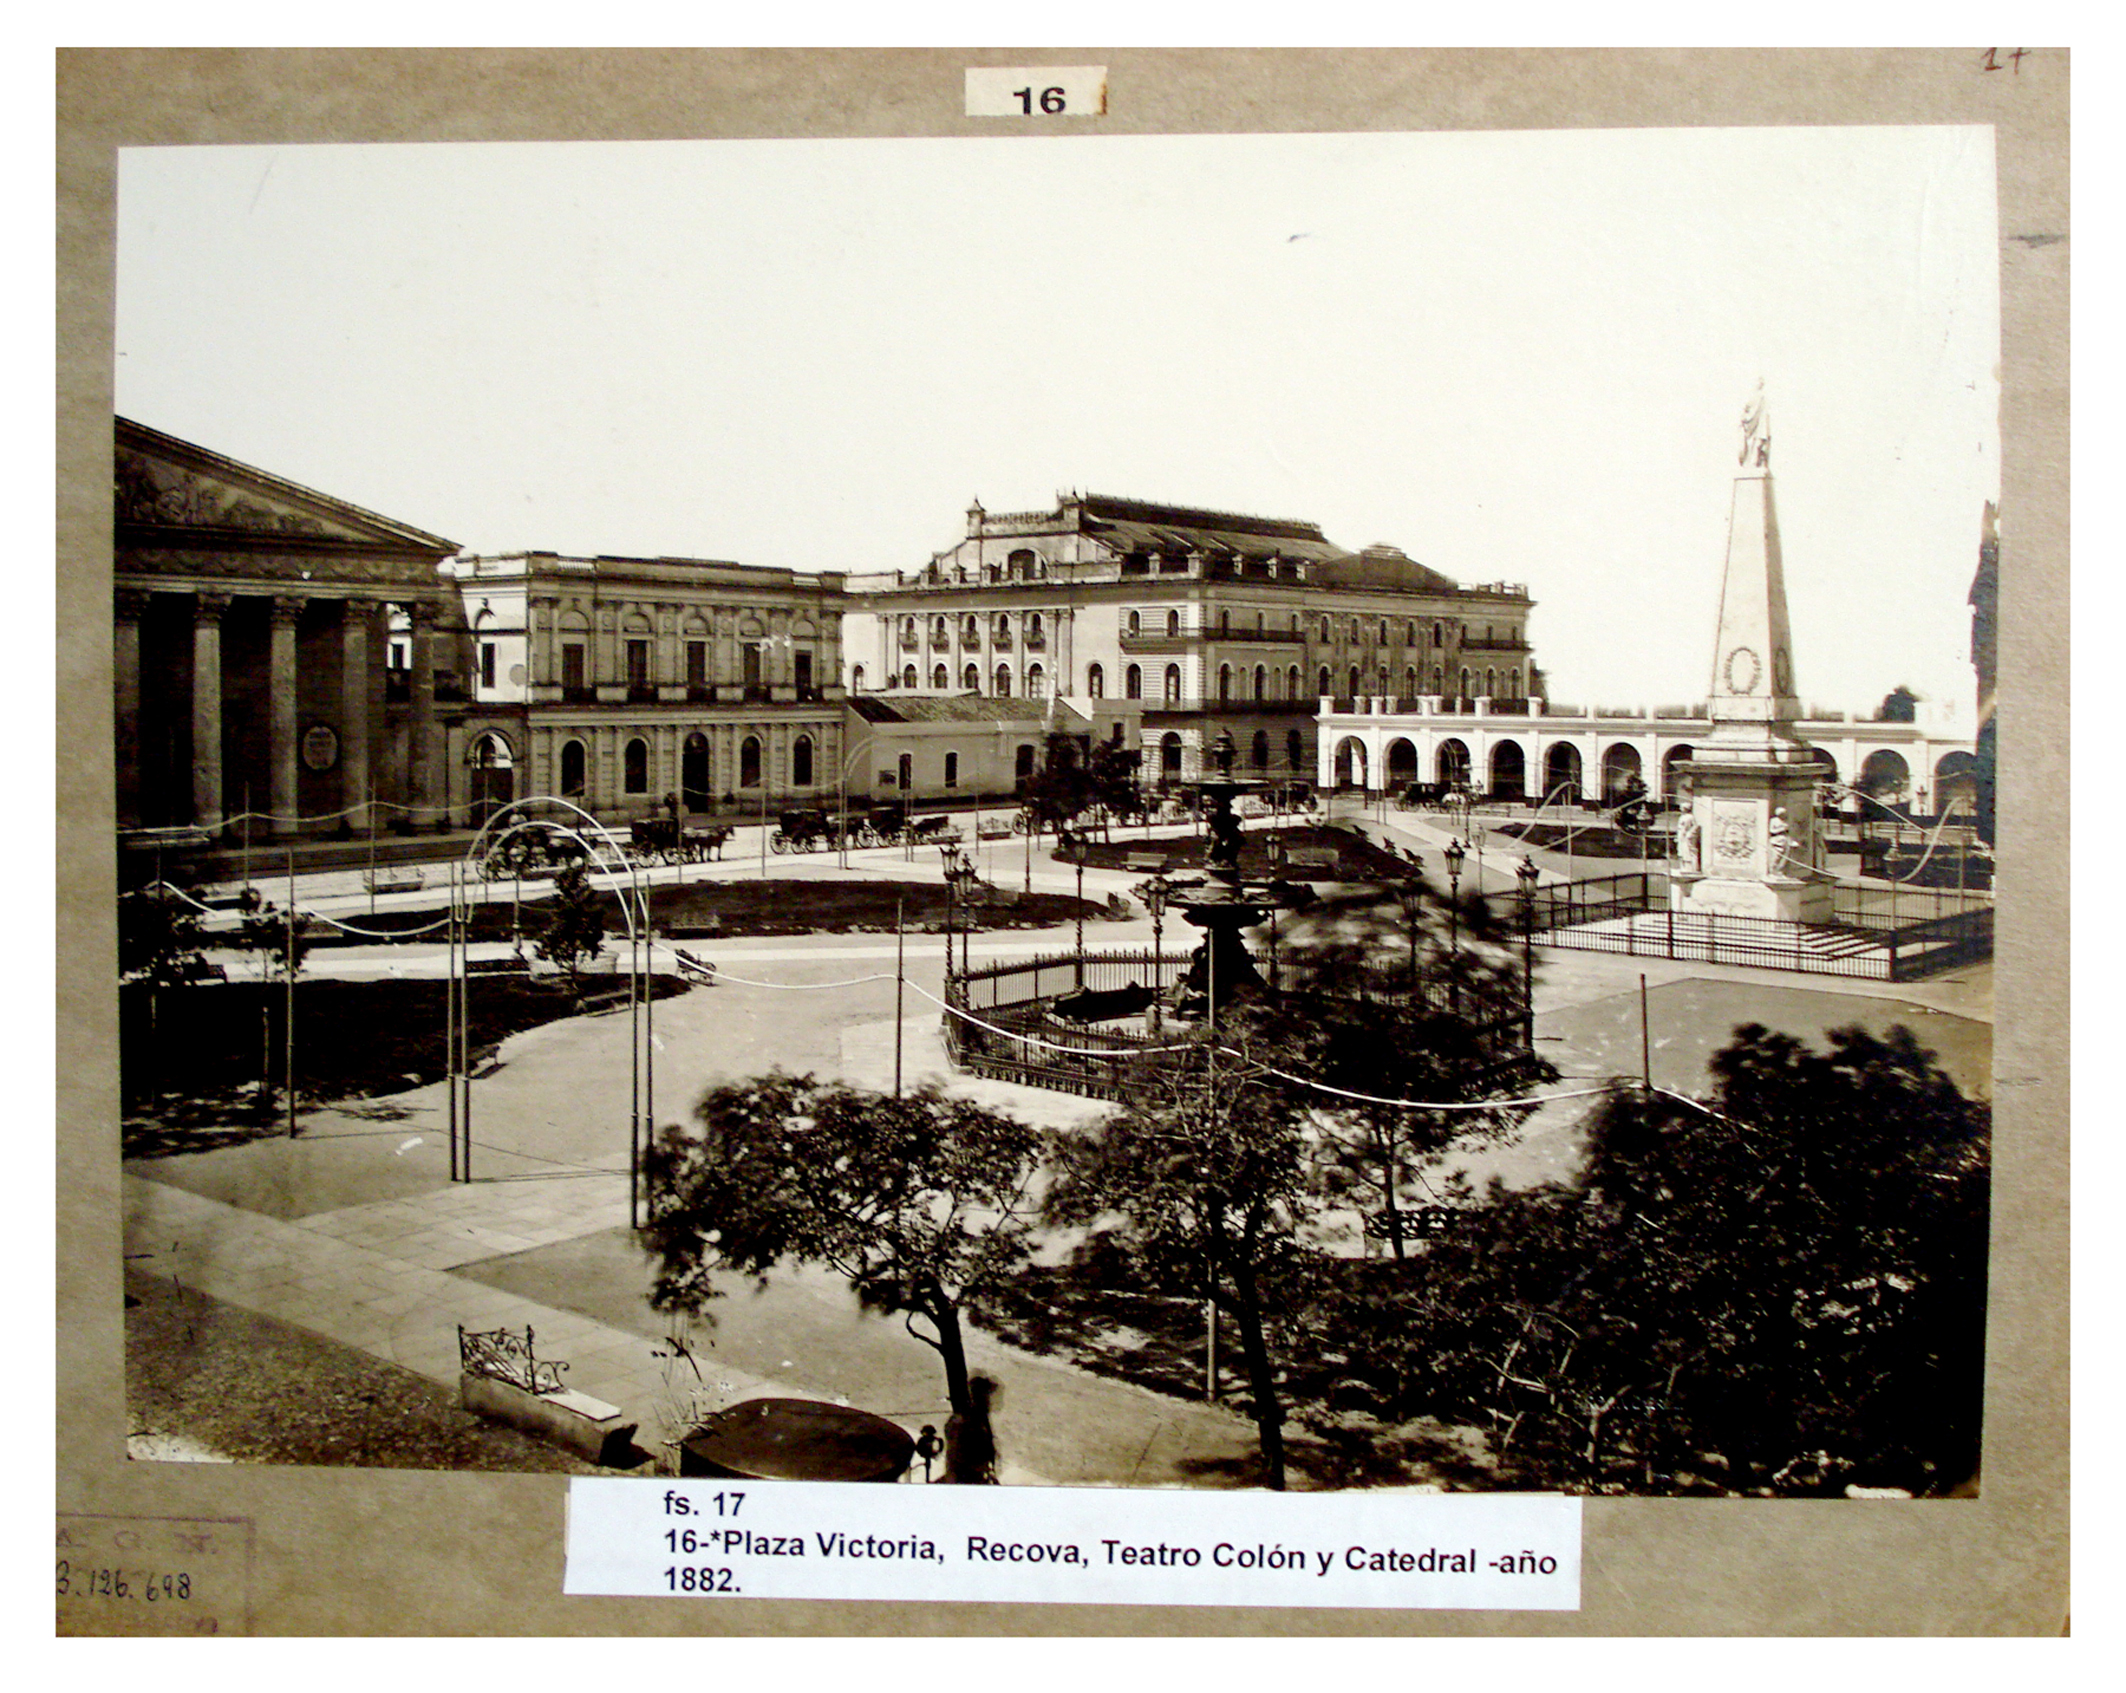 Plaza Victoria, Recova, Teatro Colón y Catedral